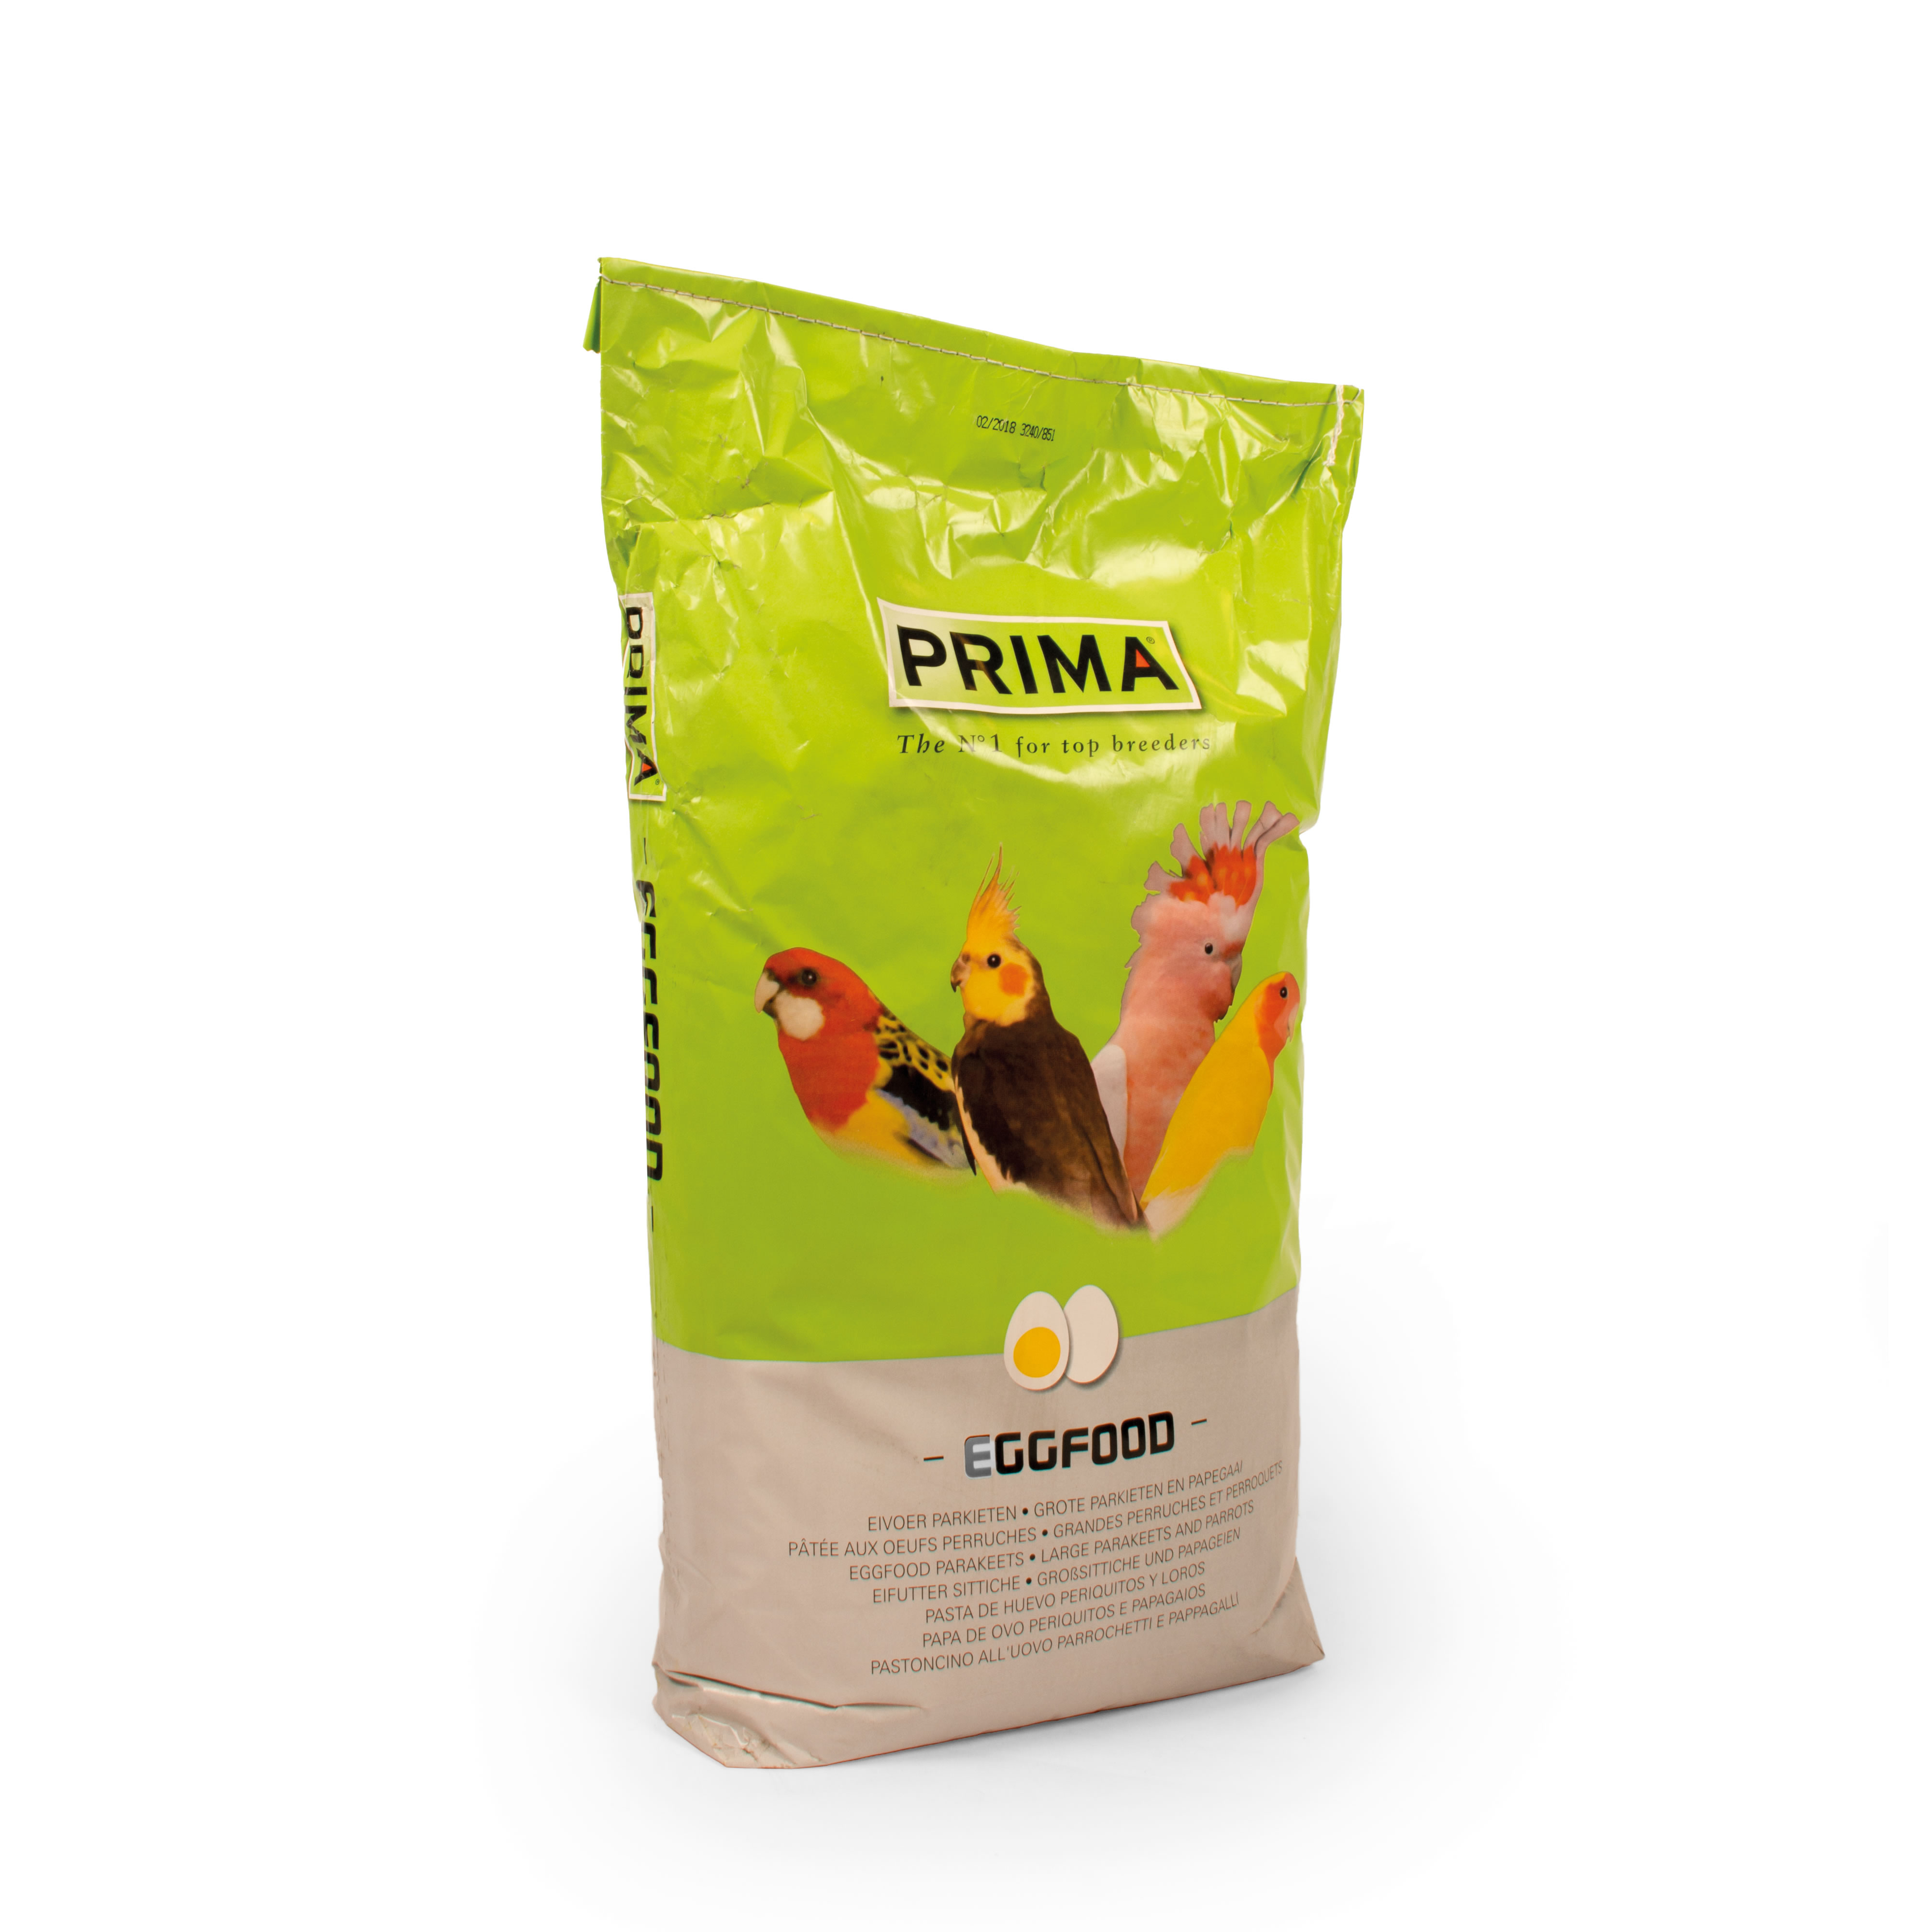 Prima eggfood parakeet & parrot - Product shot